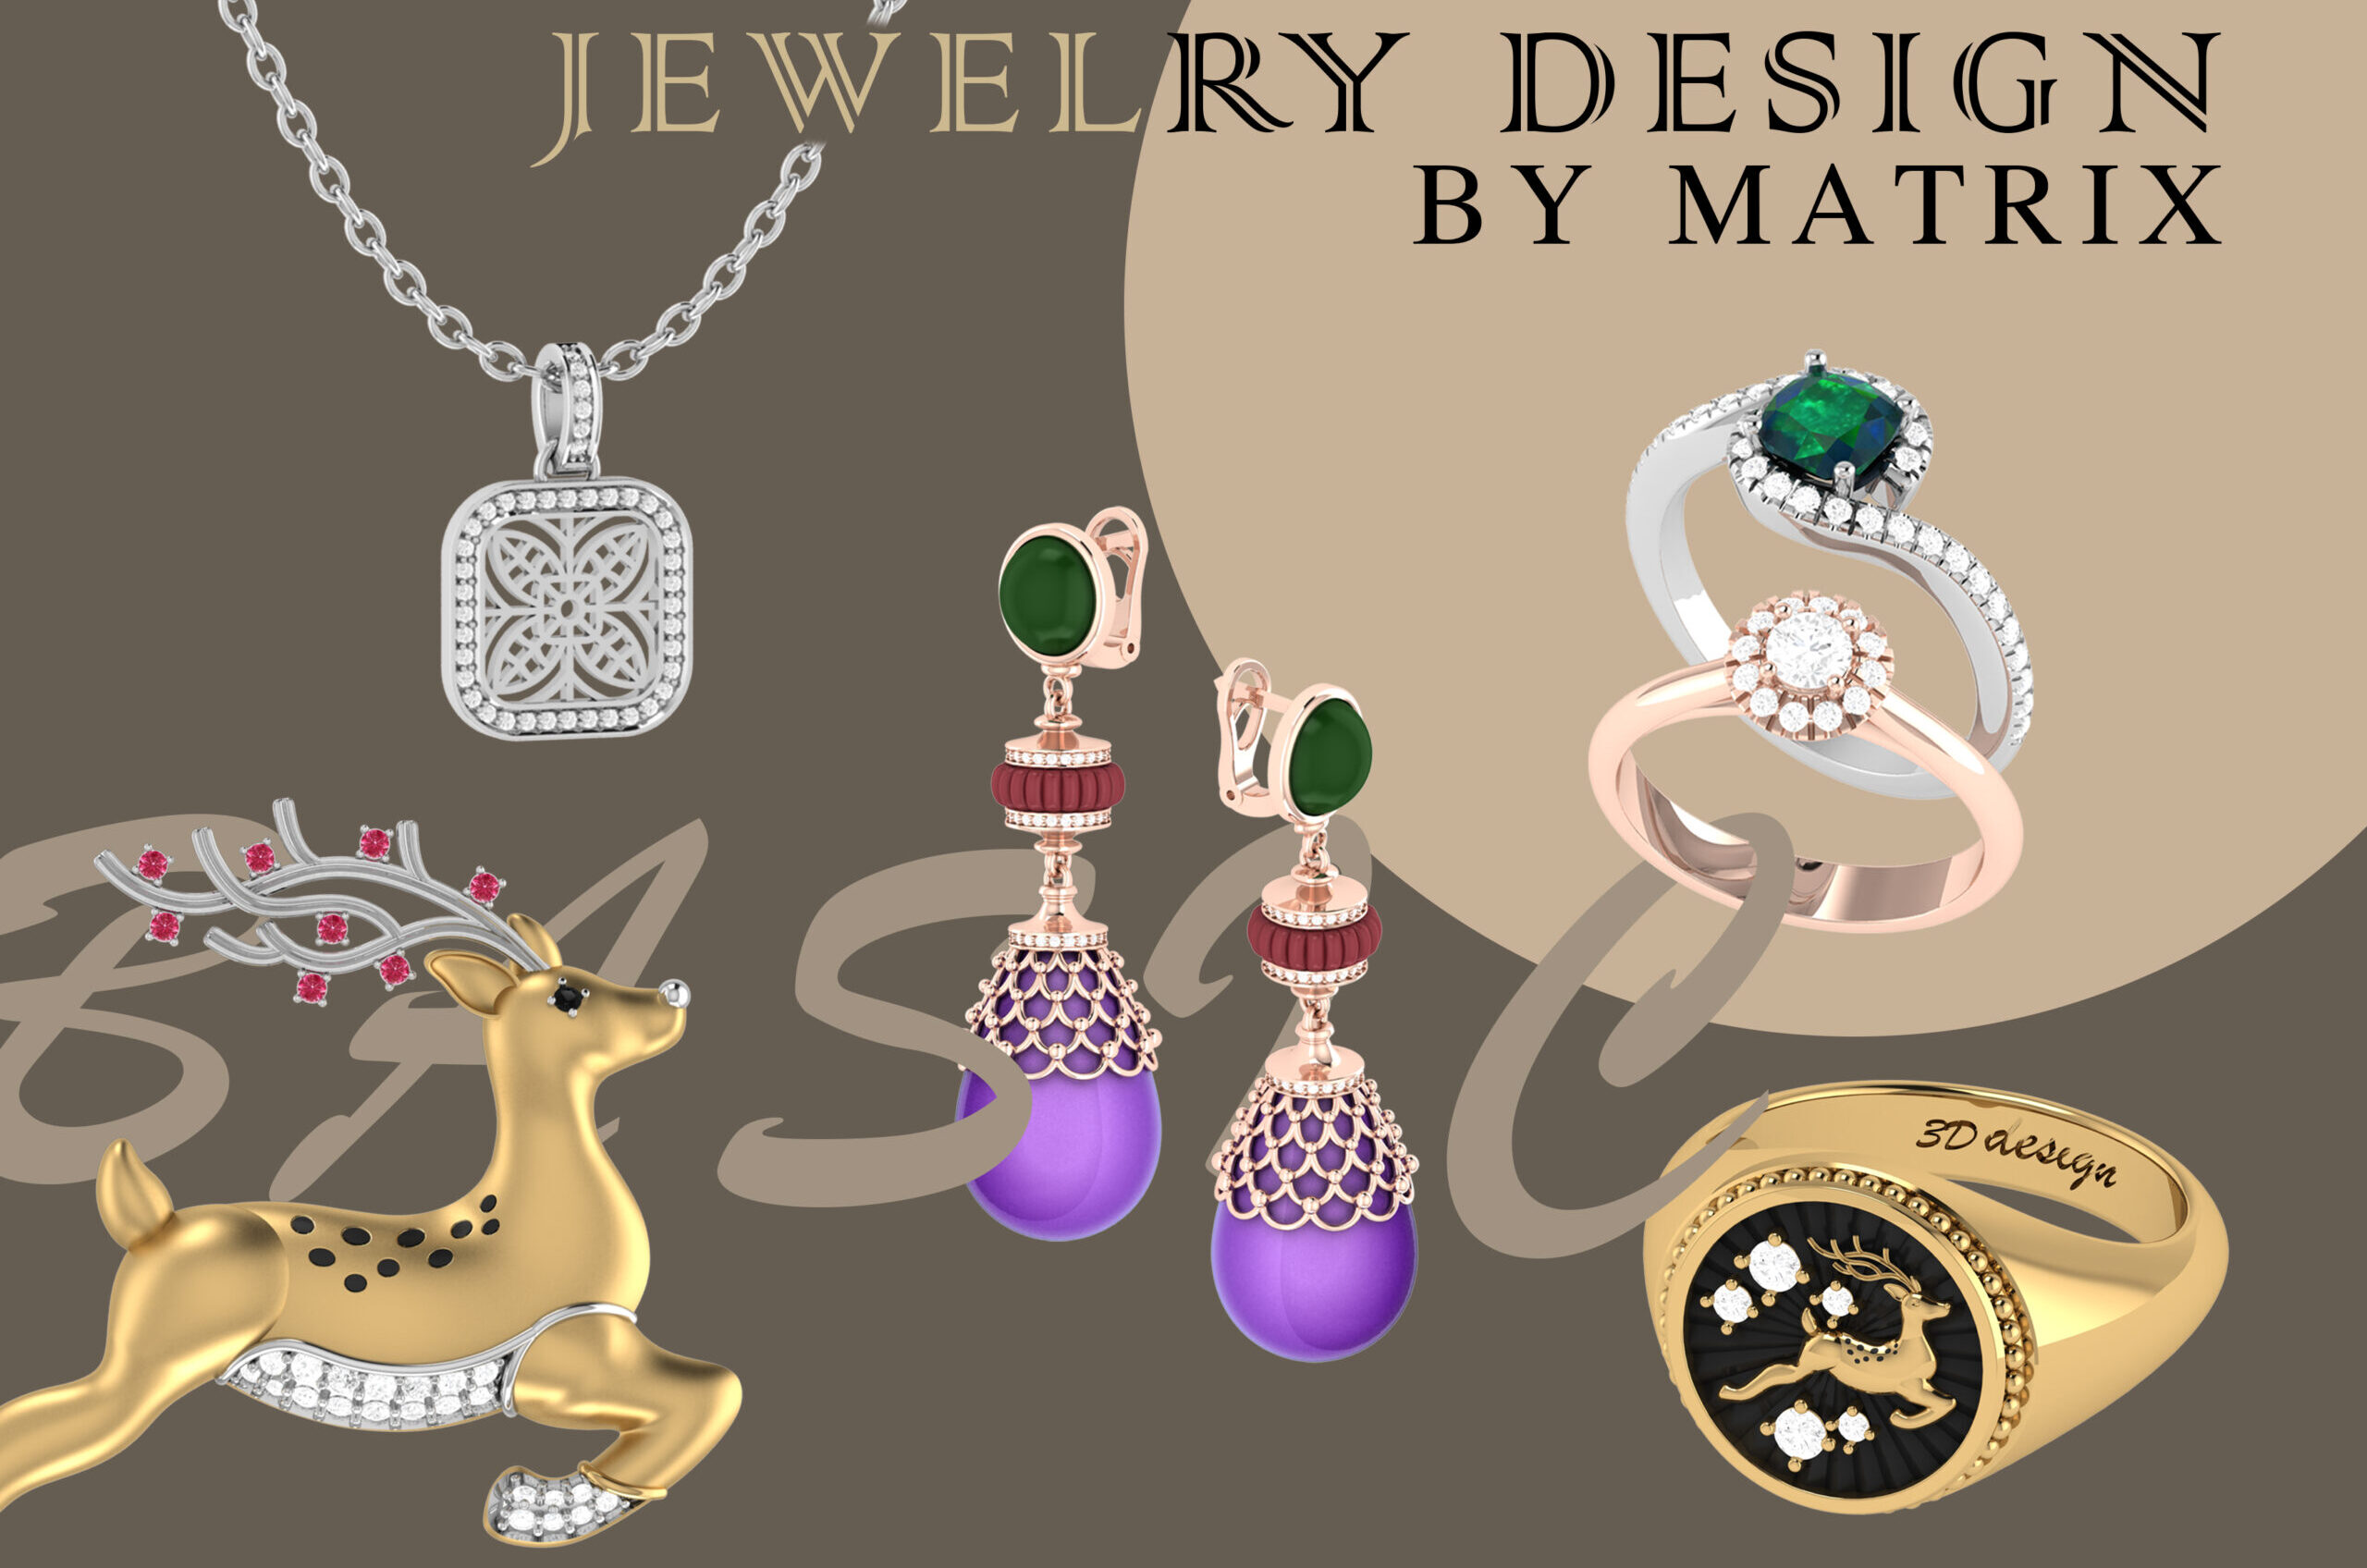 ภาพตัวอย่าง Workshop หลักสูตร Matrix for Jewelry